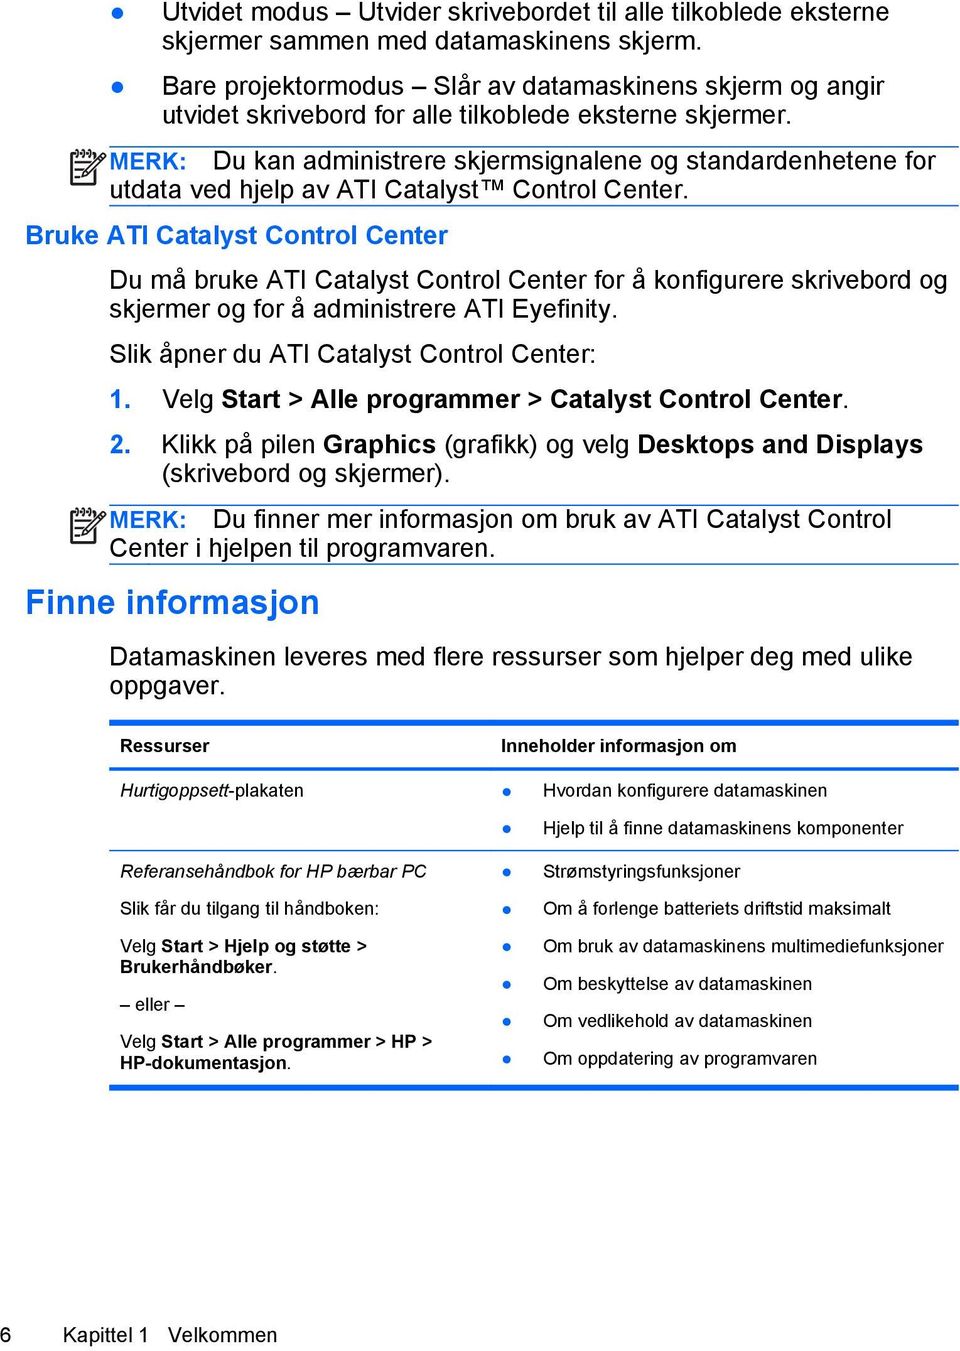 MERK: Du kan administrere skjermsignalene og standardenhetene for utdata ved hjelp av ATI Catalyst Control Center.